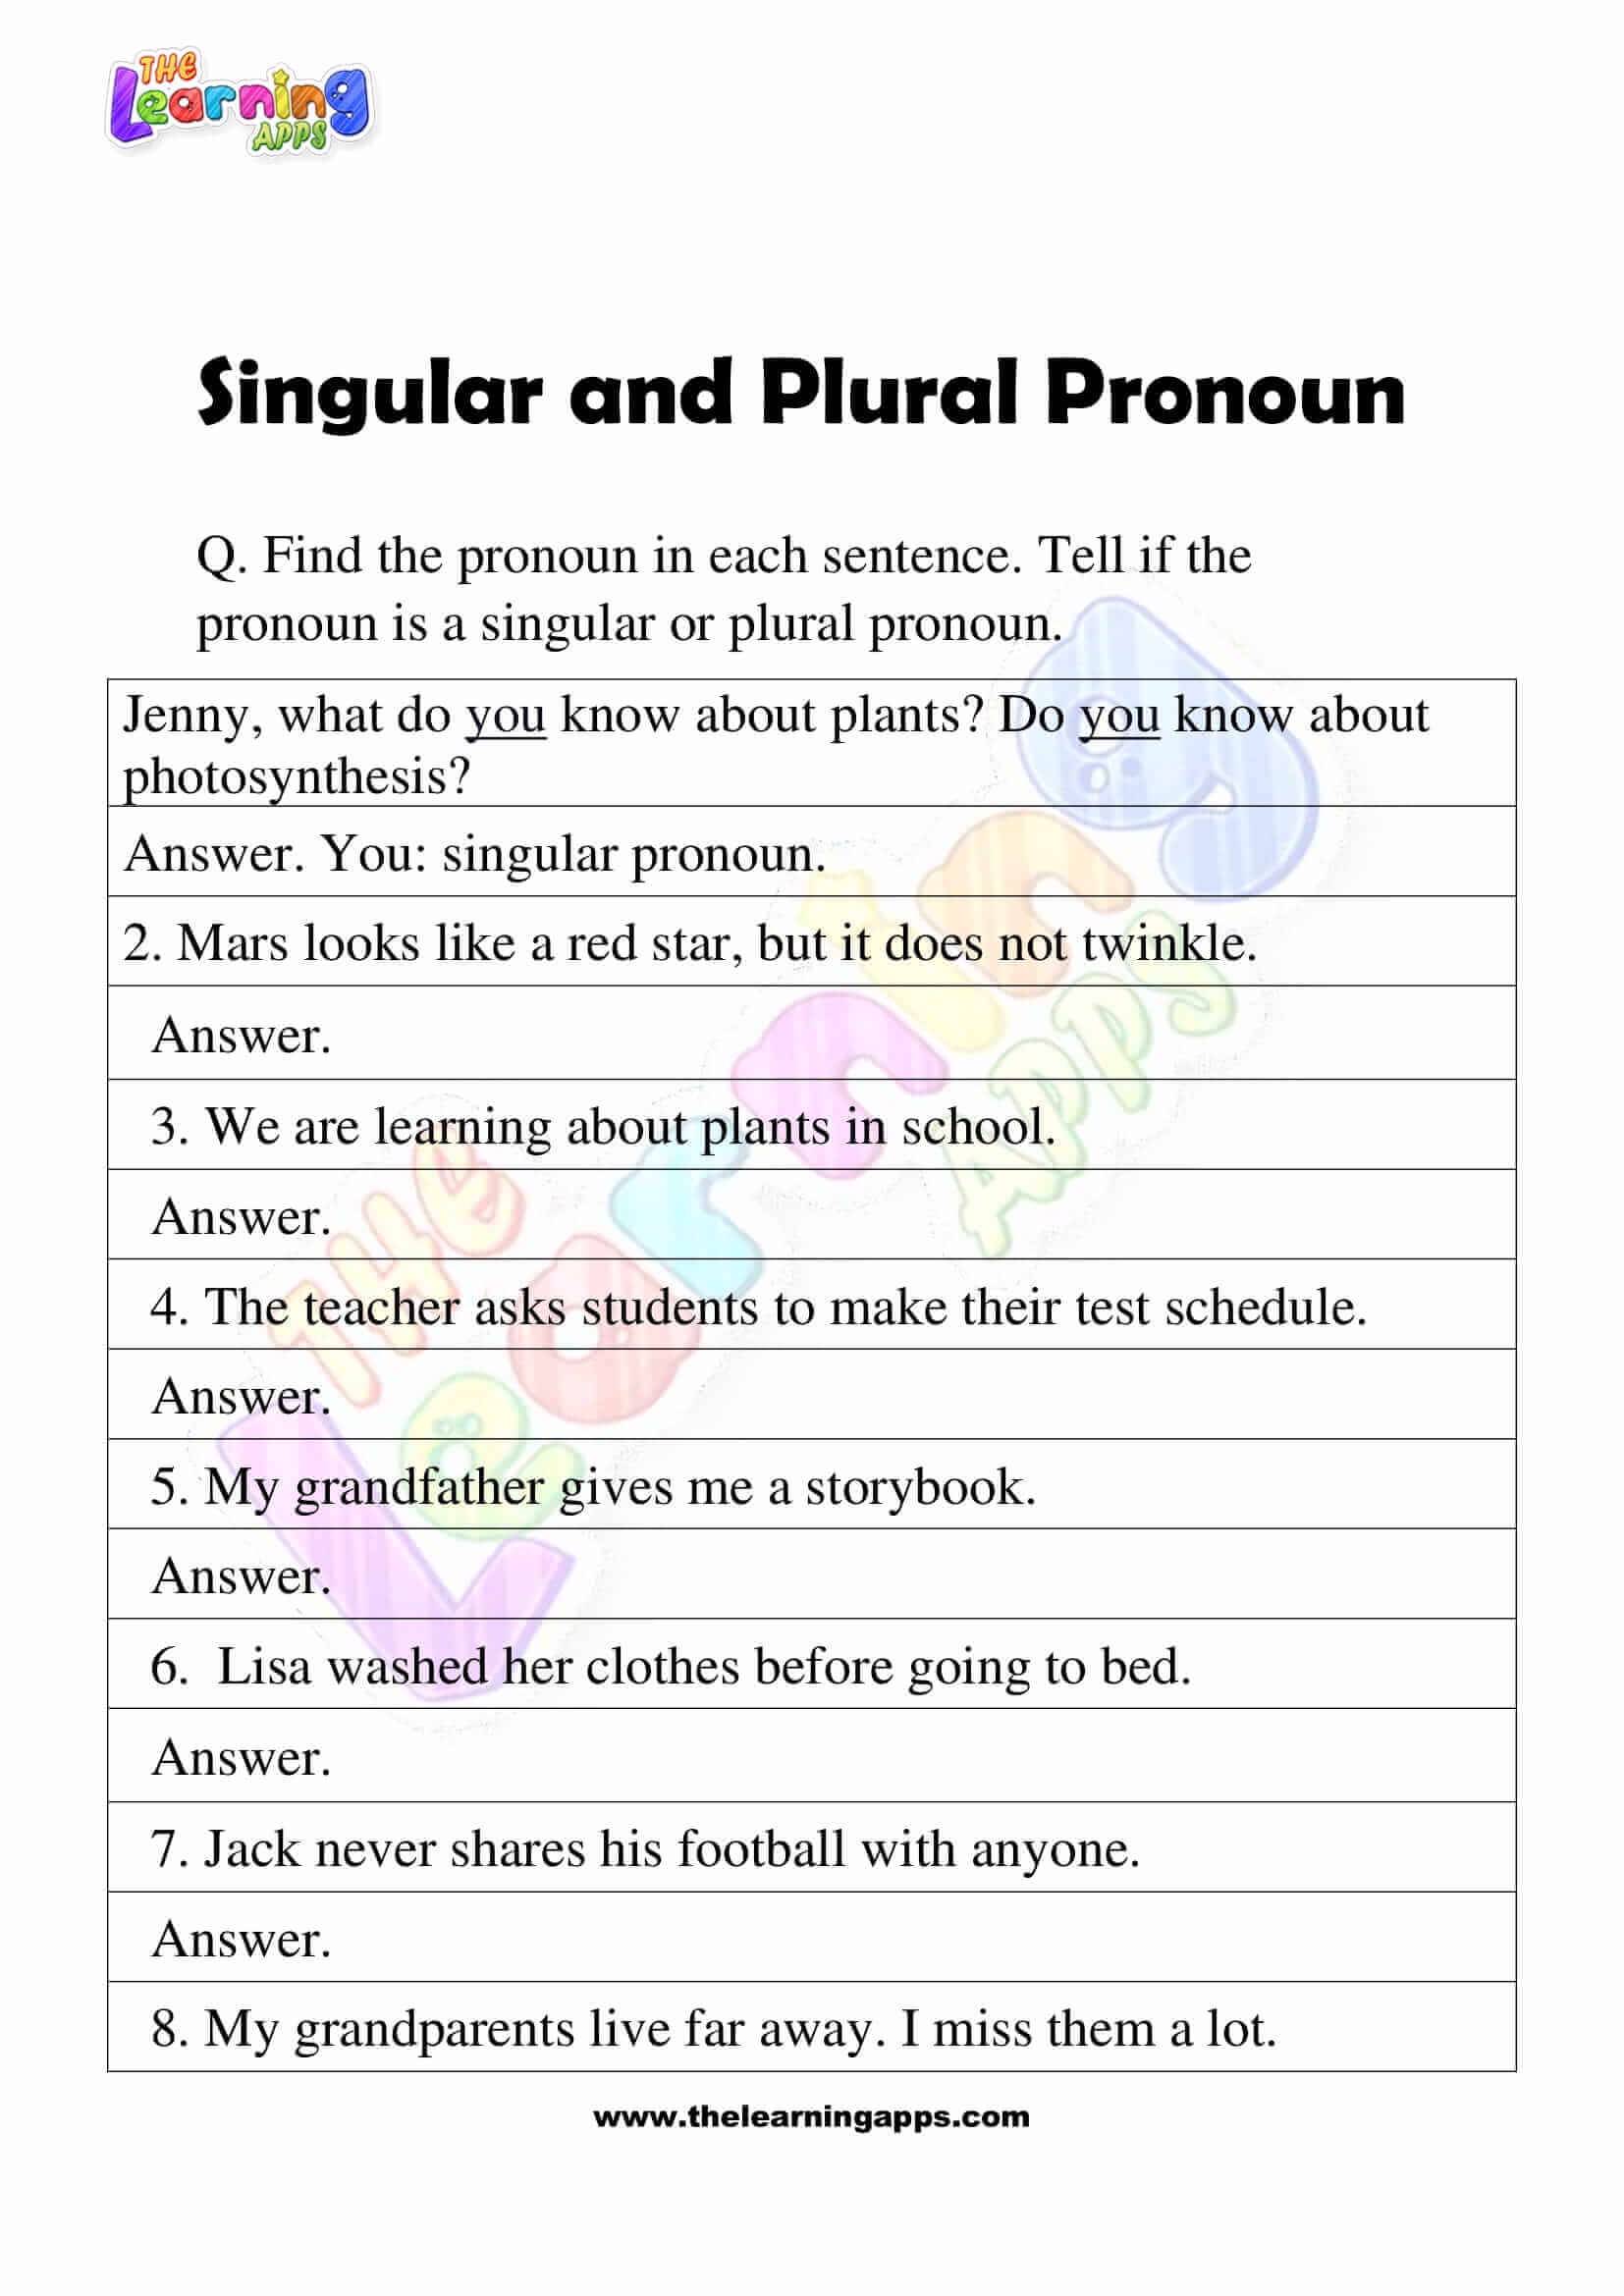 Singular-and-Plural-Pronoun-Worksheets-Grade-3-Activity-2